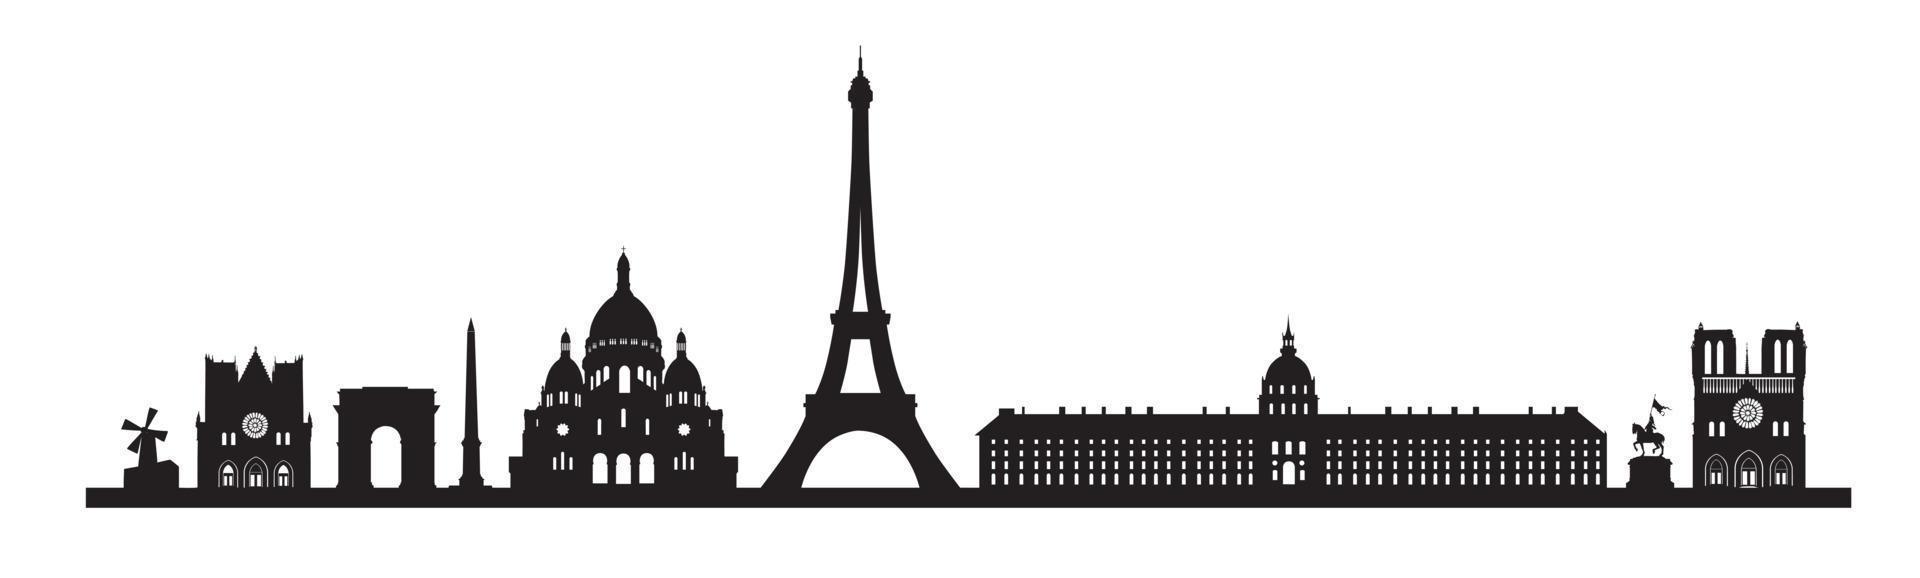 fondo del horizonte de París. conjunto de iconos de monumentos famosos de París. francia, parís viajes paisaje urbano negro vector